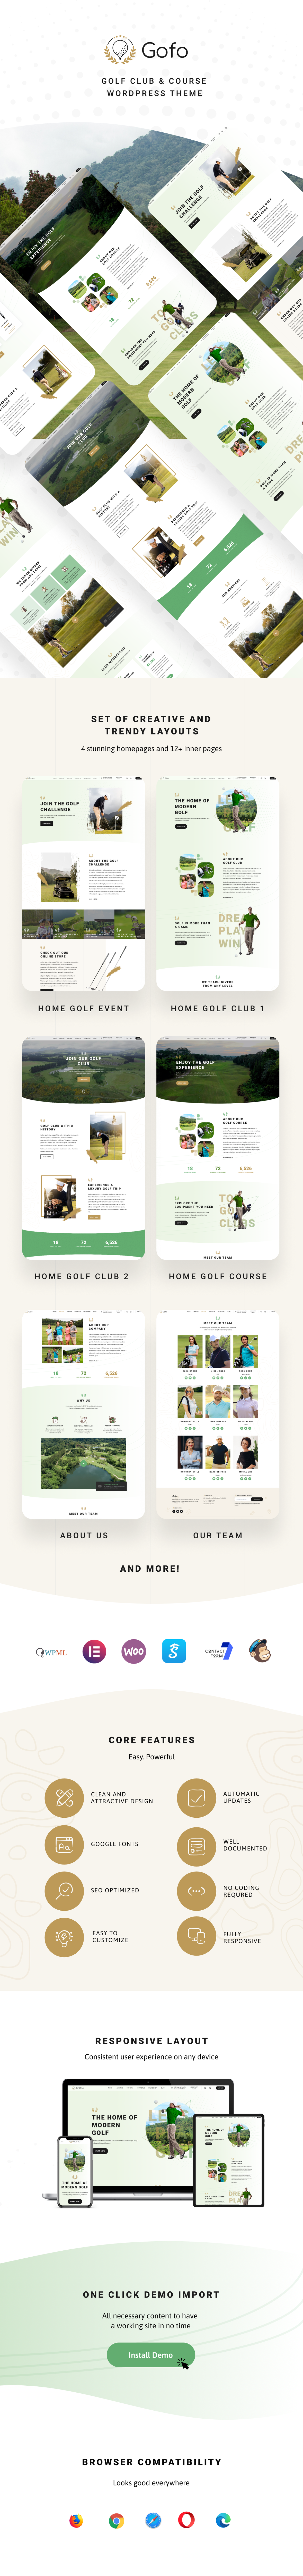 Gofo - WordPress-Thema für Golfclub und Golfplatz